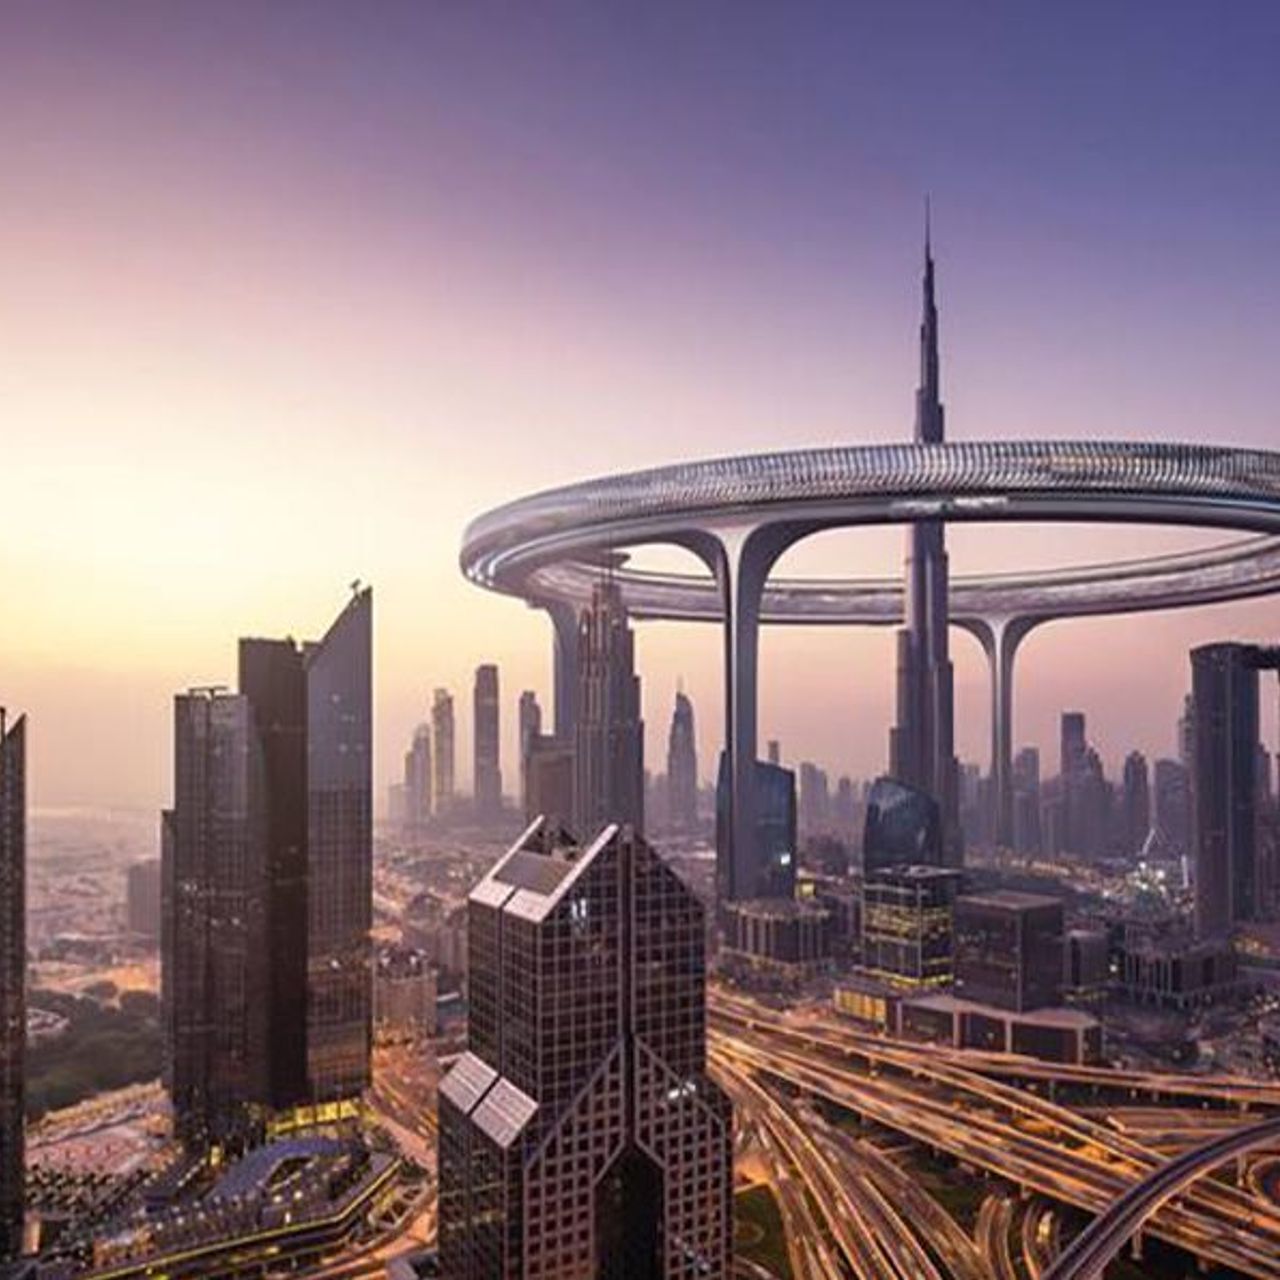 Downtown Circle Dubai нь 3 км урт цагираг хэлбэртэй барилга байх болно